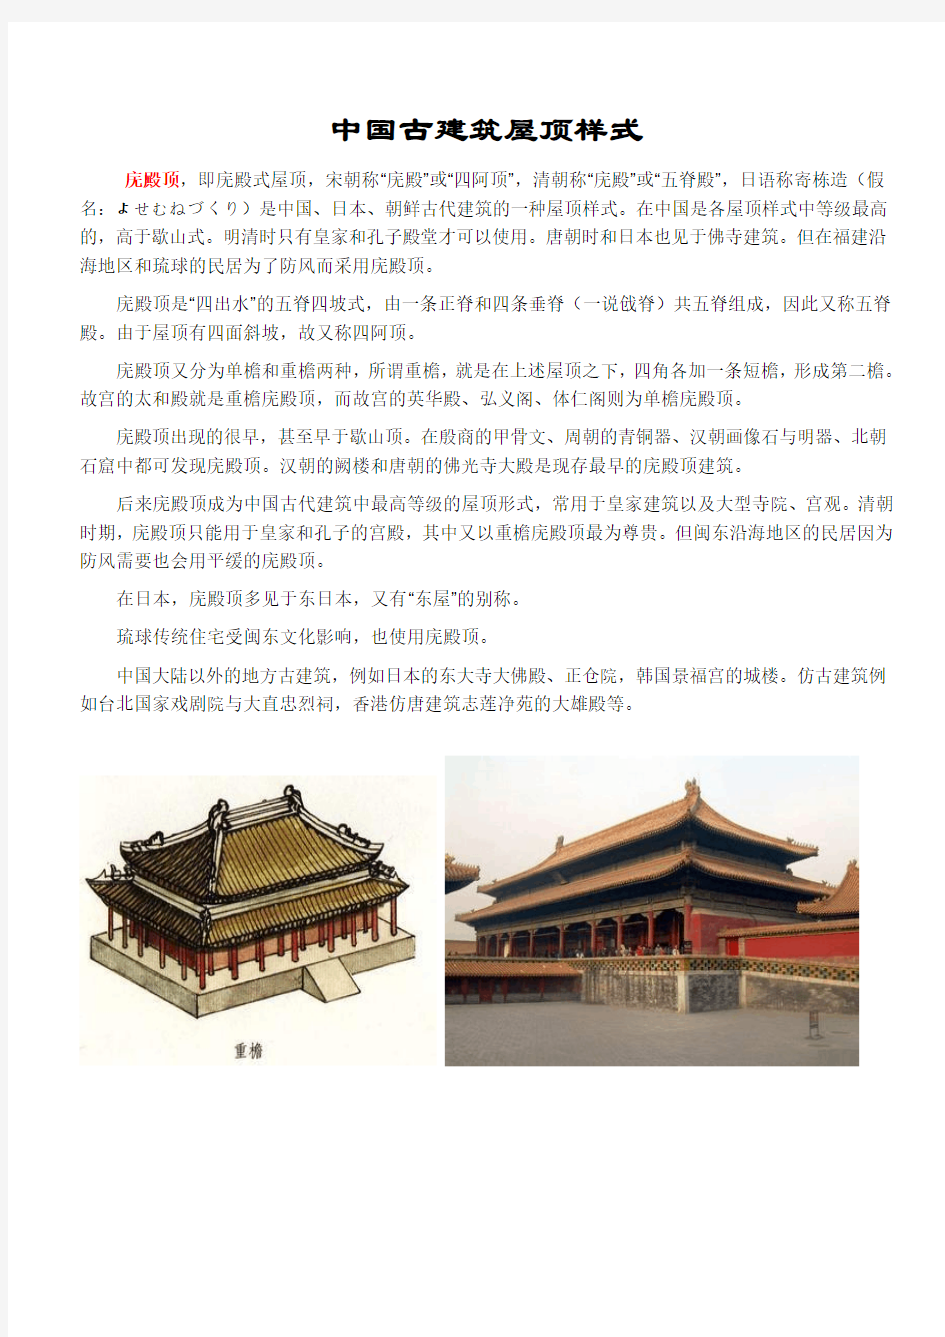 中国古建筑屋顶样式